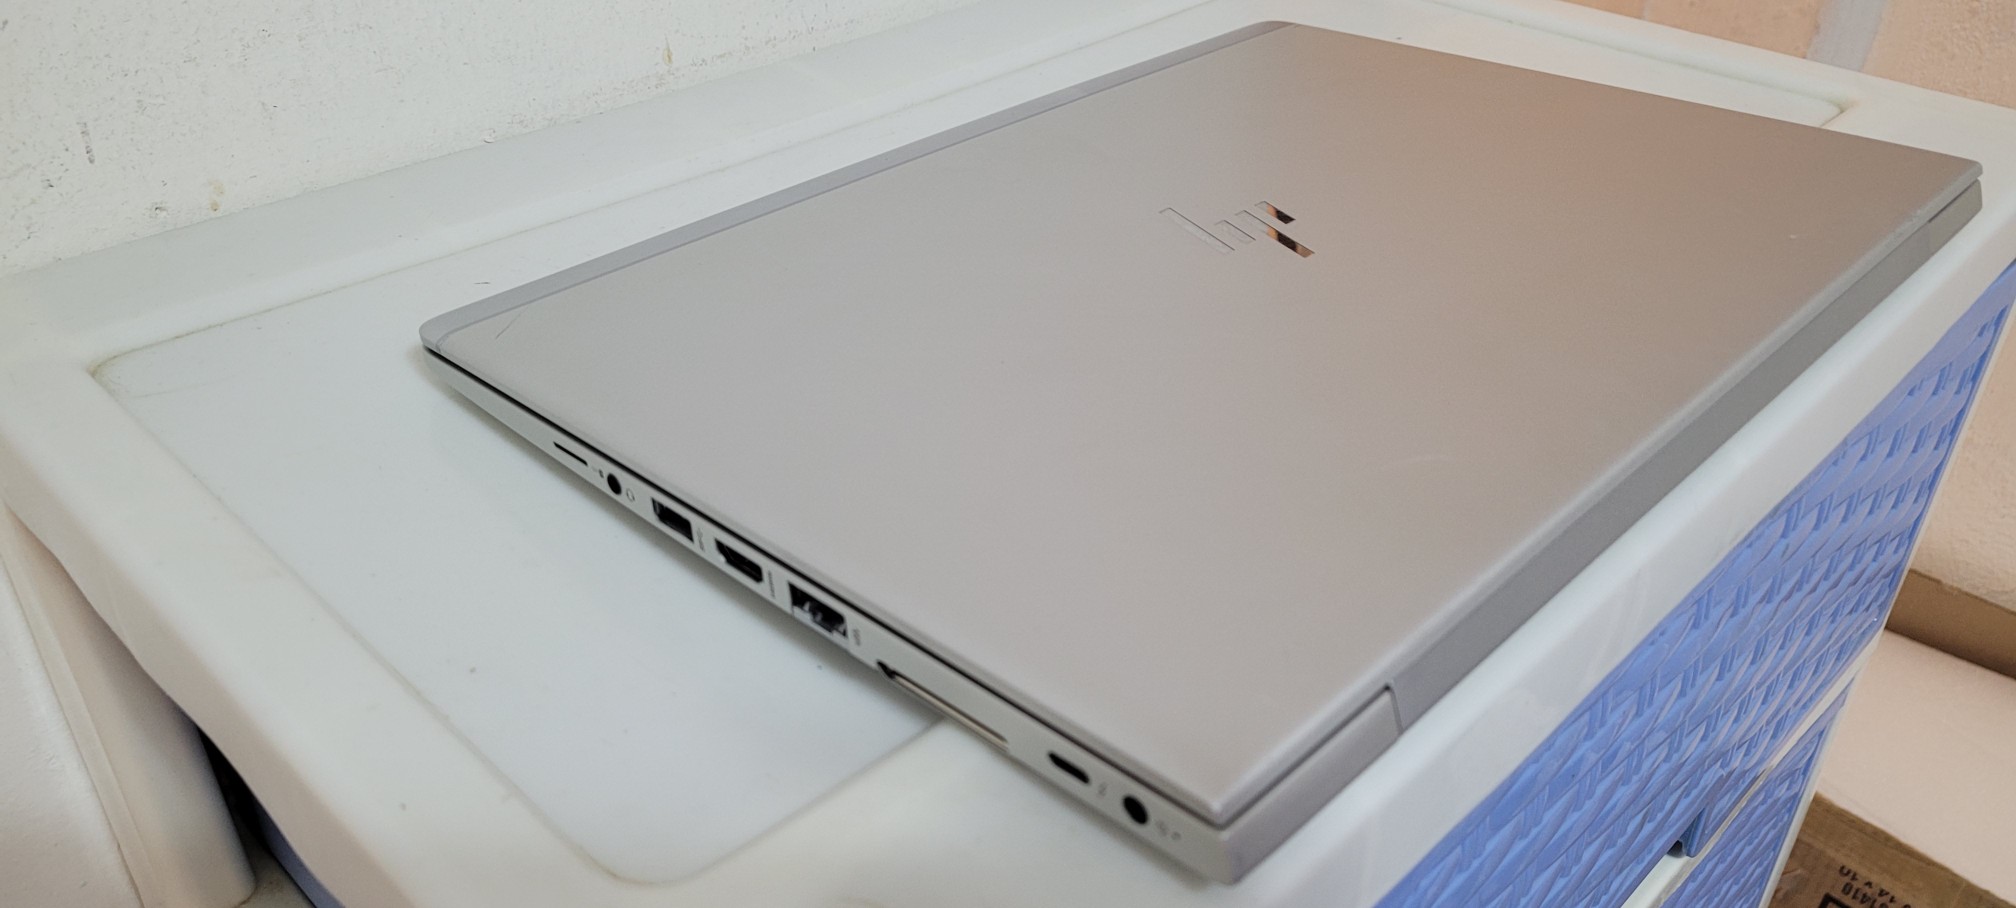 computadoras y laptops - laptop hp 840 G5 14 Pulg Core i5 7ma Gen Ram 8gb ddr4 Disco 256gb SSD New 2